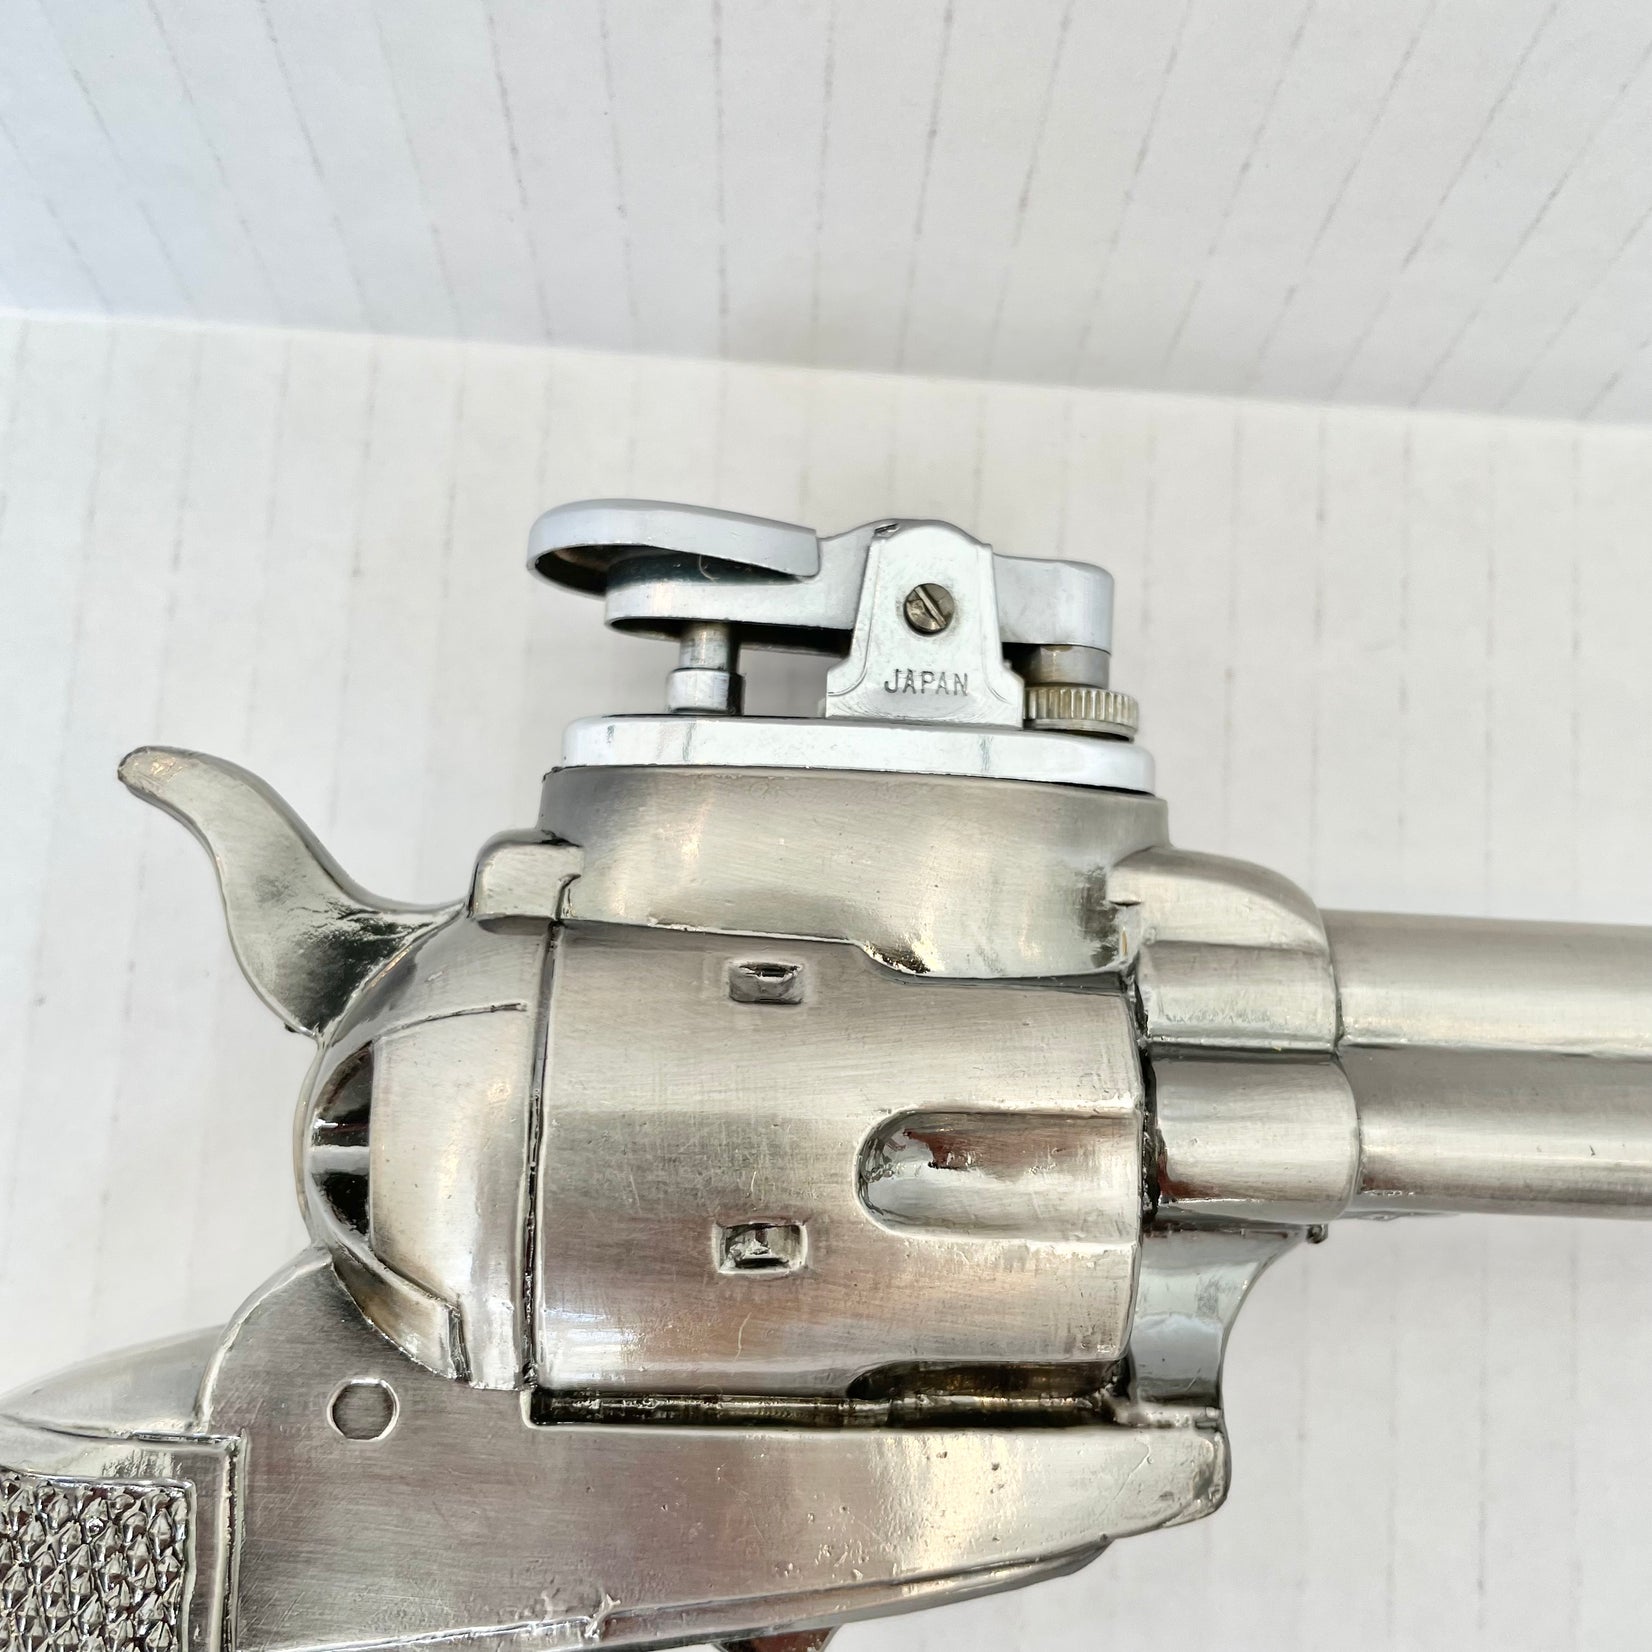 Japanese Colt Revolver Lighter